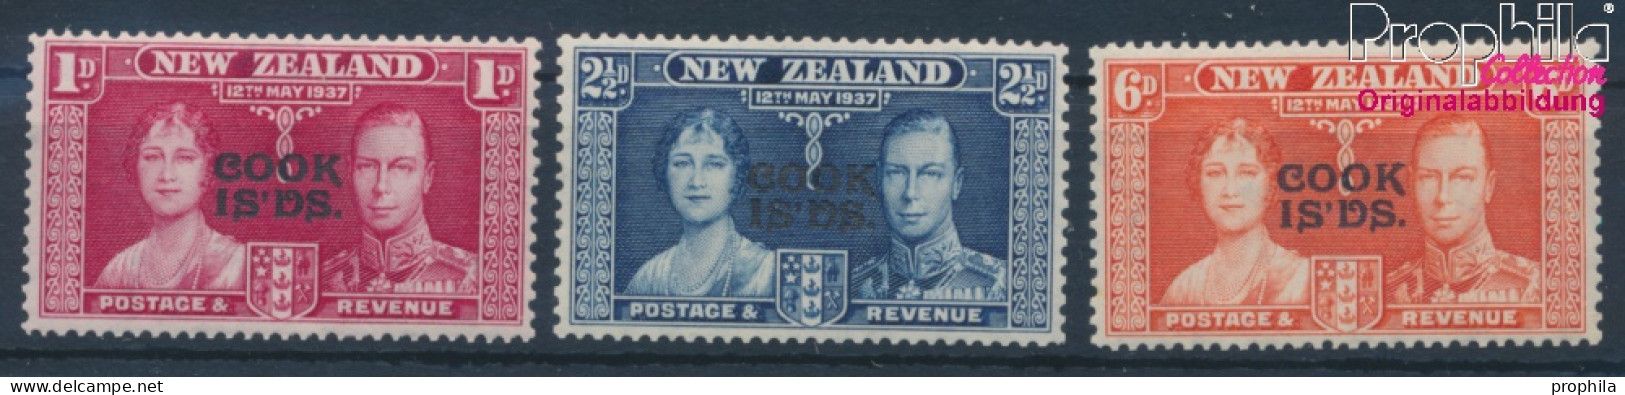 Cookinseln Postfrisch Krönung 1937 Krönung  (10364284 - Cookinseln